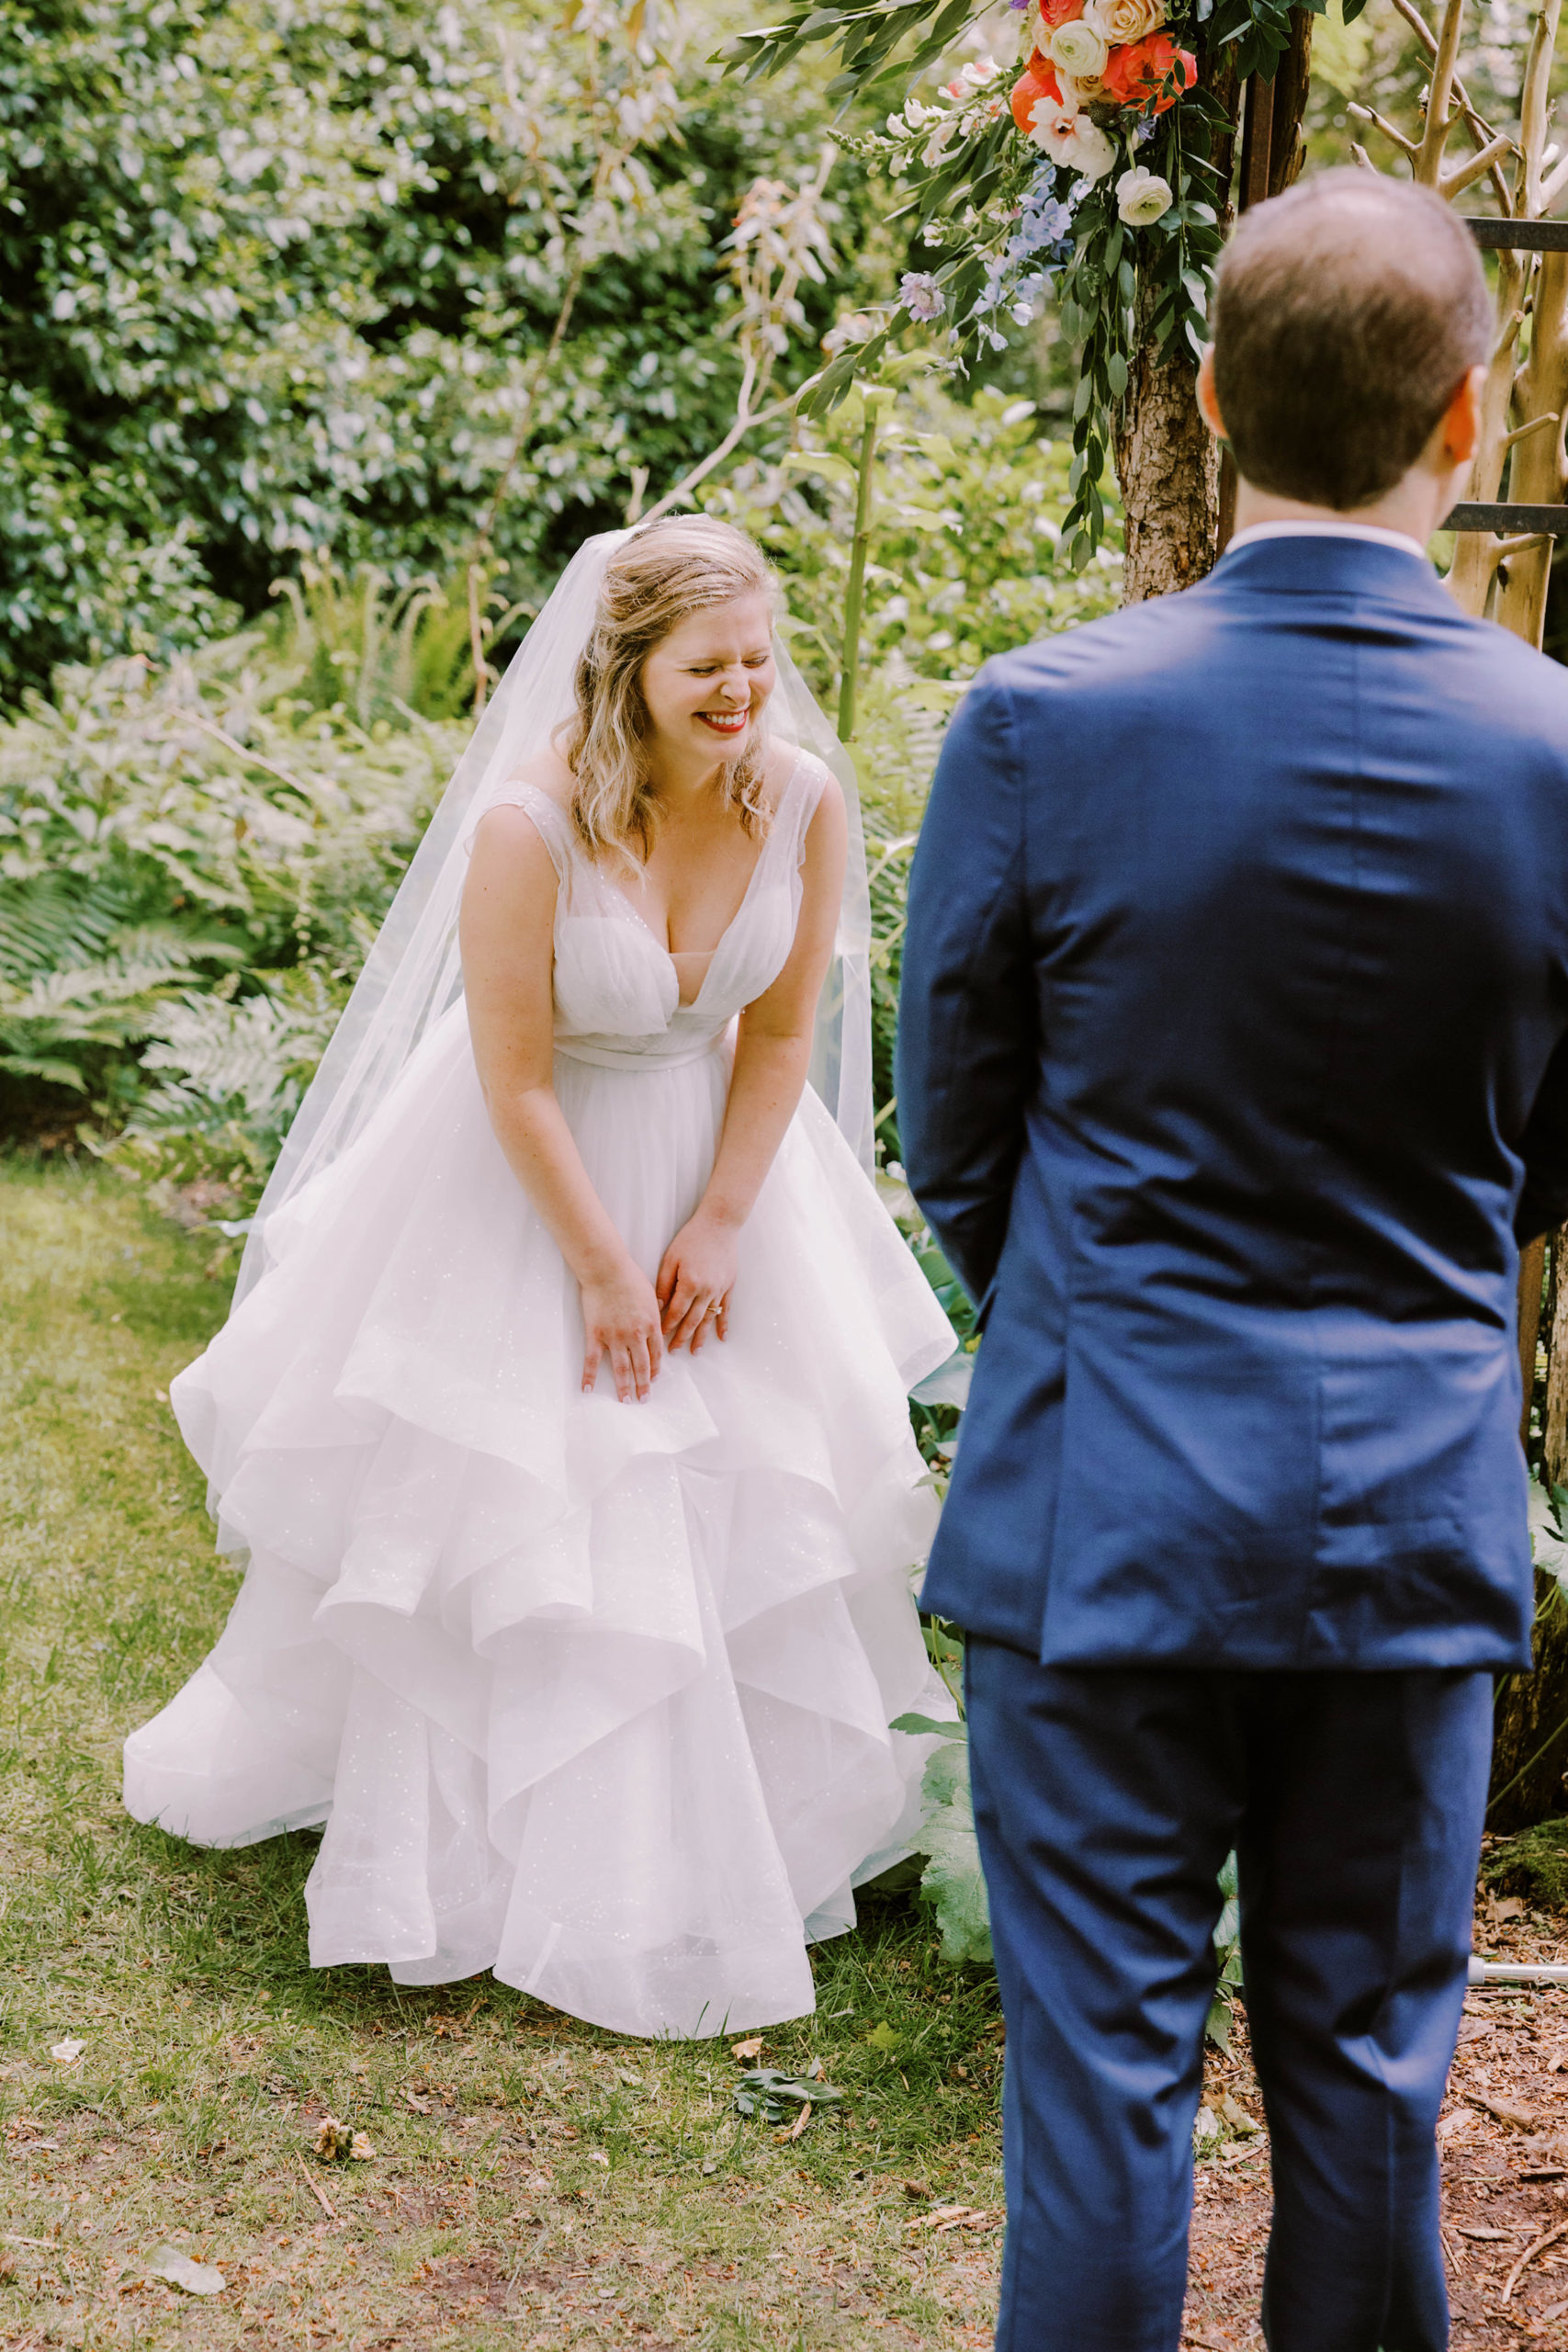 A Dunn Gardens wedding: Sarah Morgan and David